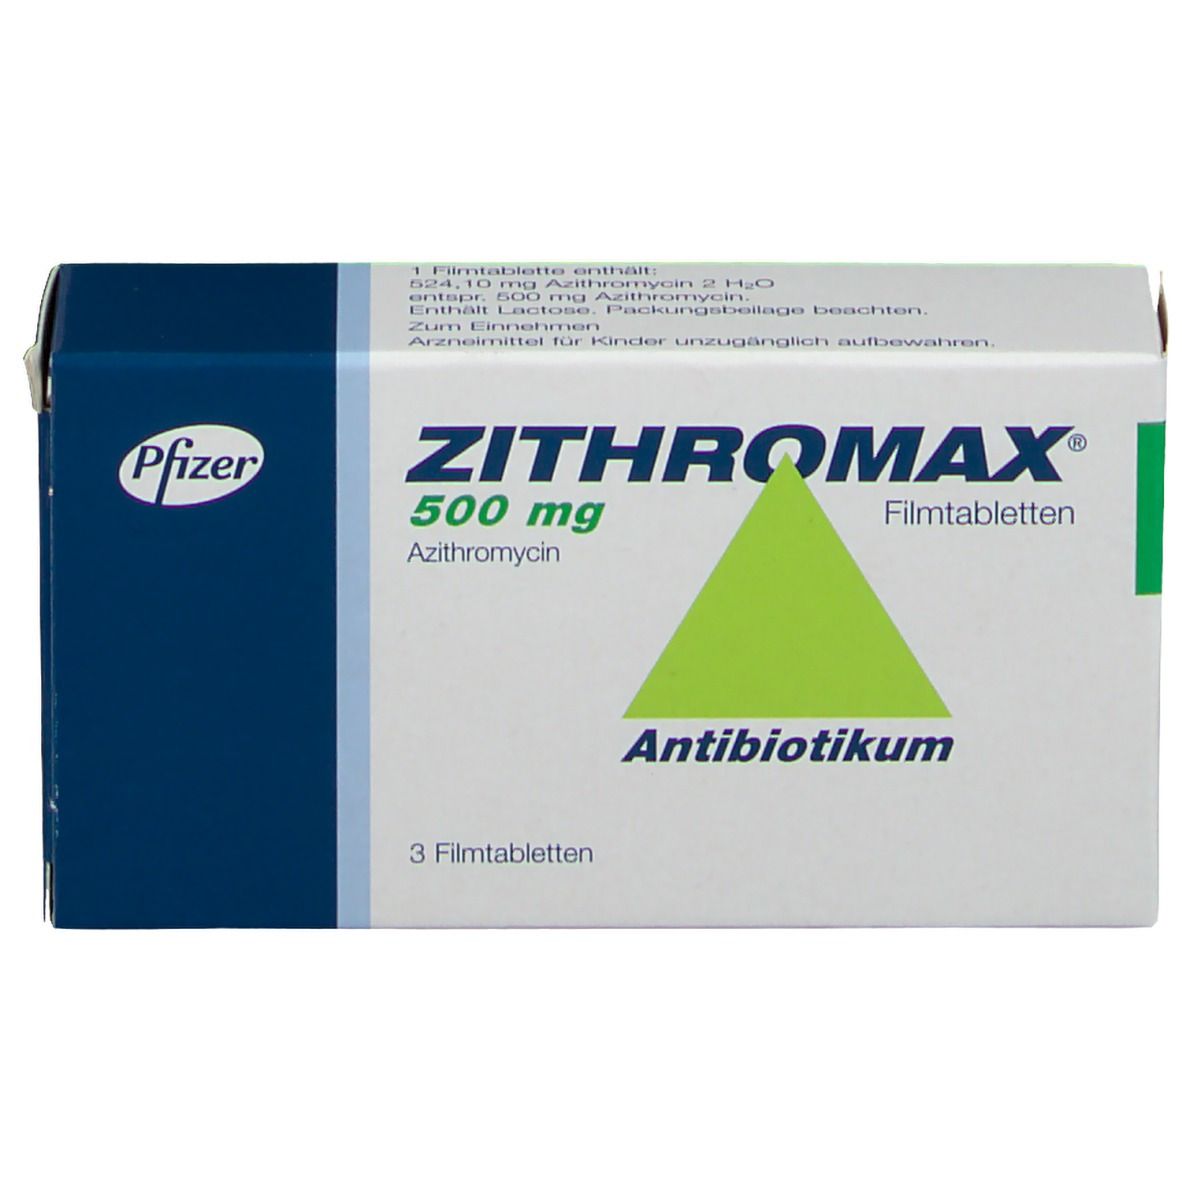 زيثروماكس Zithromax مضاد حيوي هل يستخدم لكورونا 01 05 202